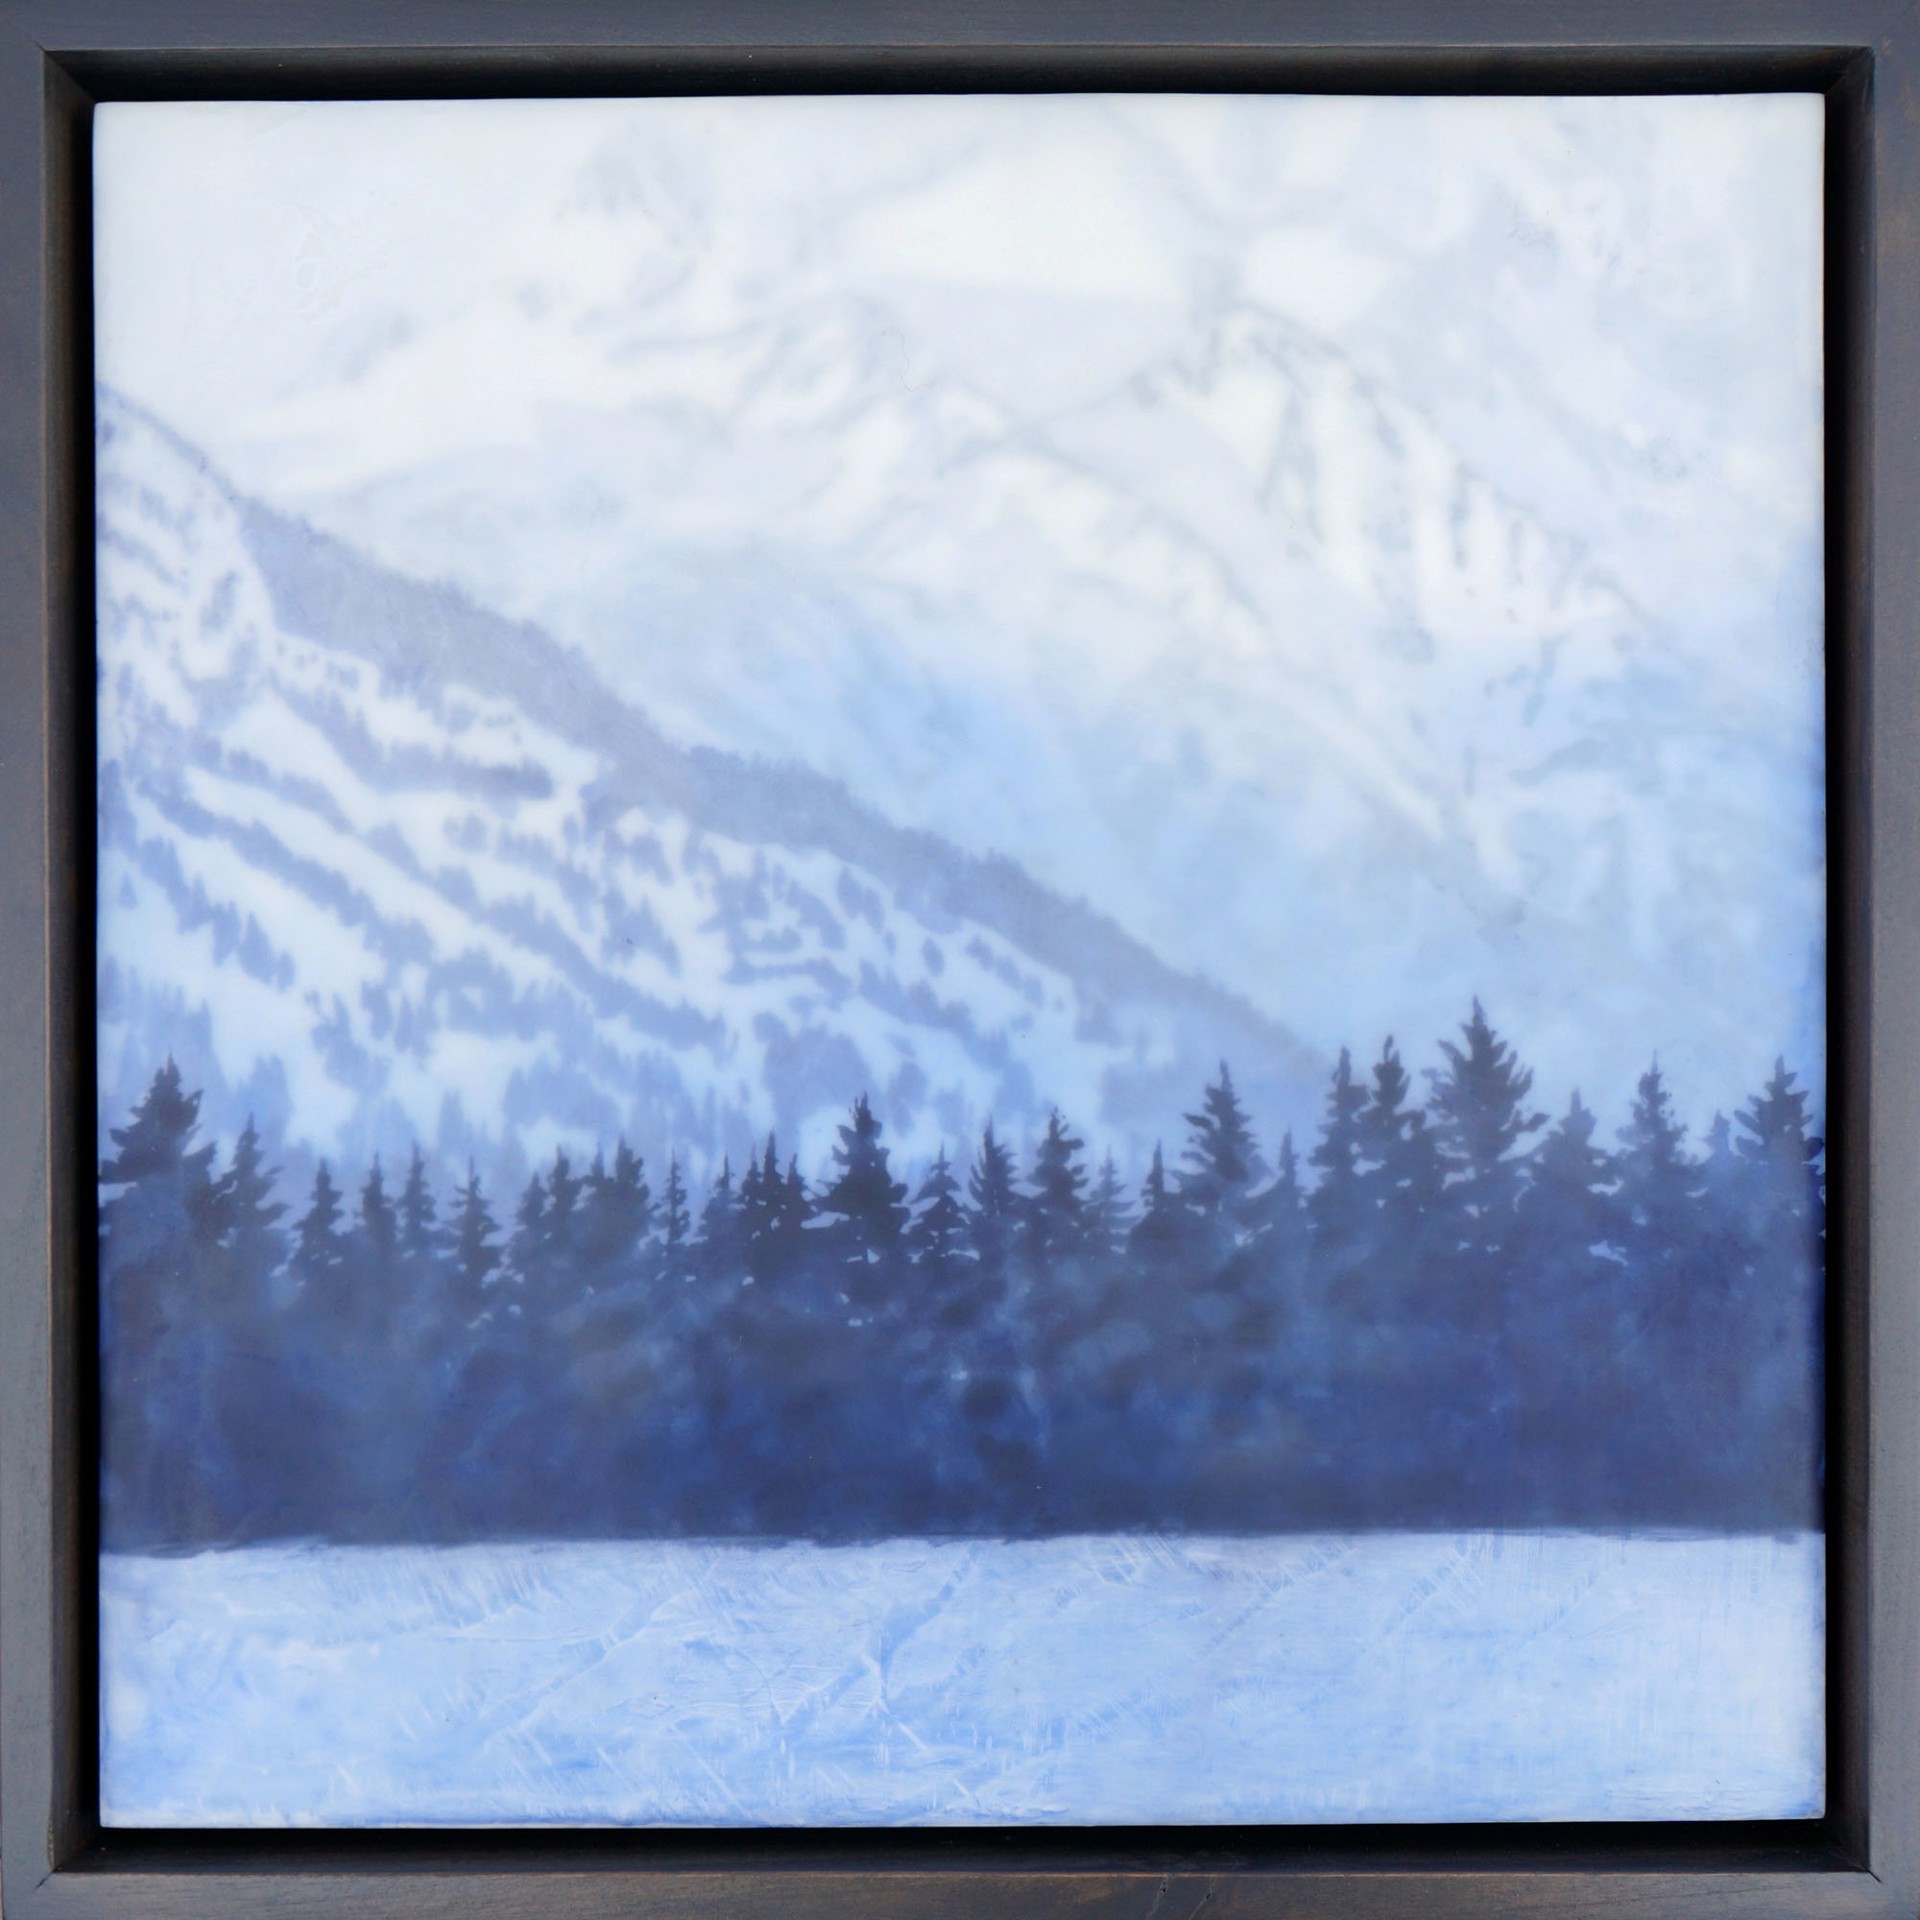 Original Encaustic Landscape Painting By Bridgette Meinhold Featuring A Sloped Mountain Side